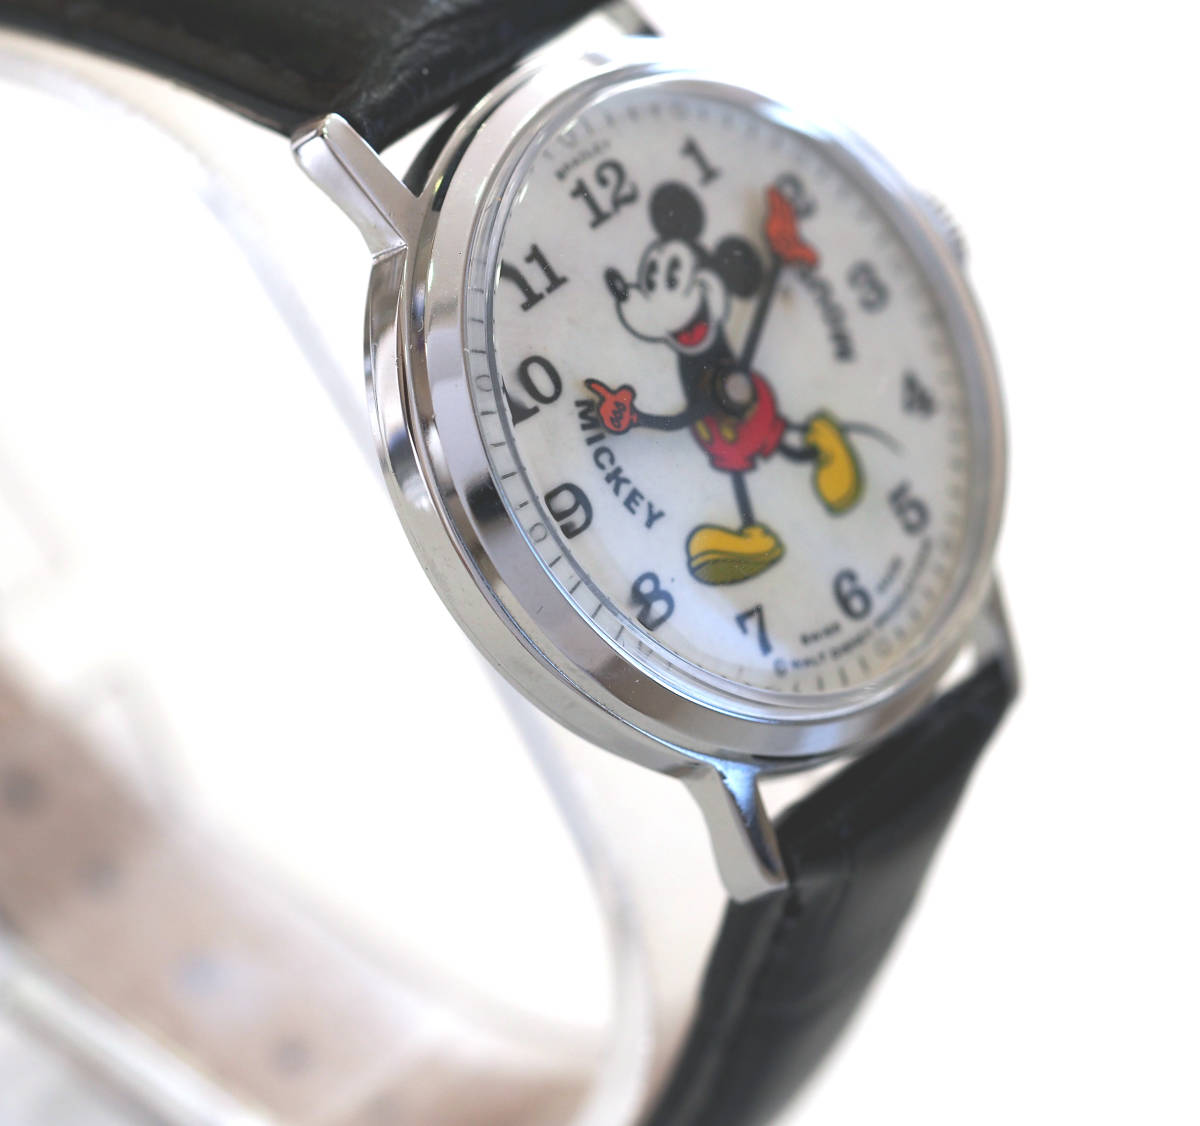  редкий полное обслуживание работа Mickey Mouse 1970 годы BRADLEY автоматический механический завод наручные часы ремень новый товар Disney b Lad Ray b Lad Lee пирог I редкость 